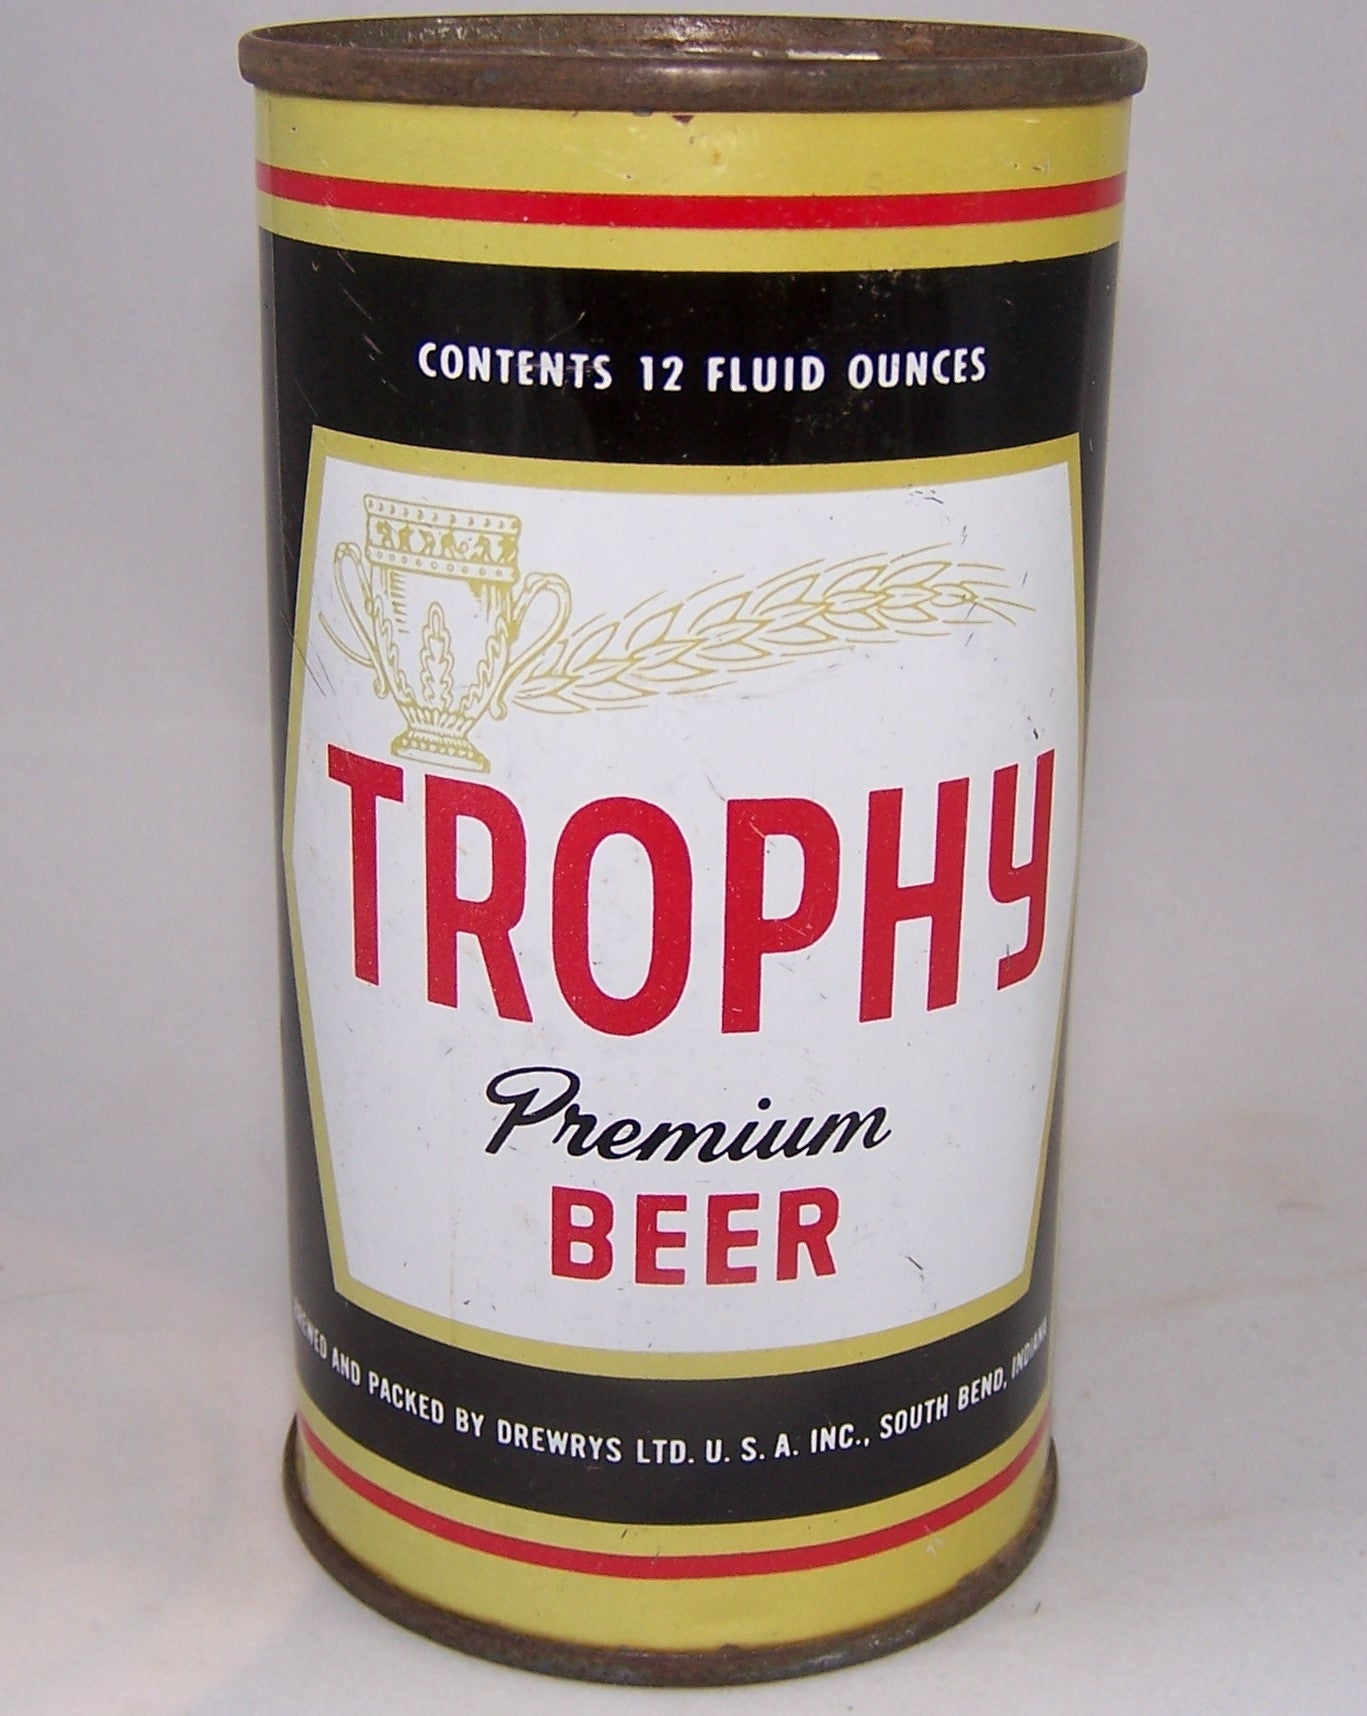 Trophy Premium Beer, USBC 140-3, Grade 1